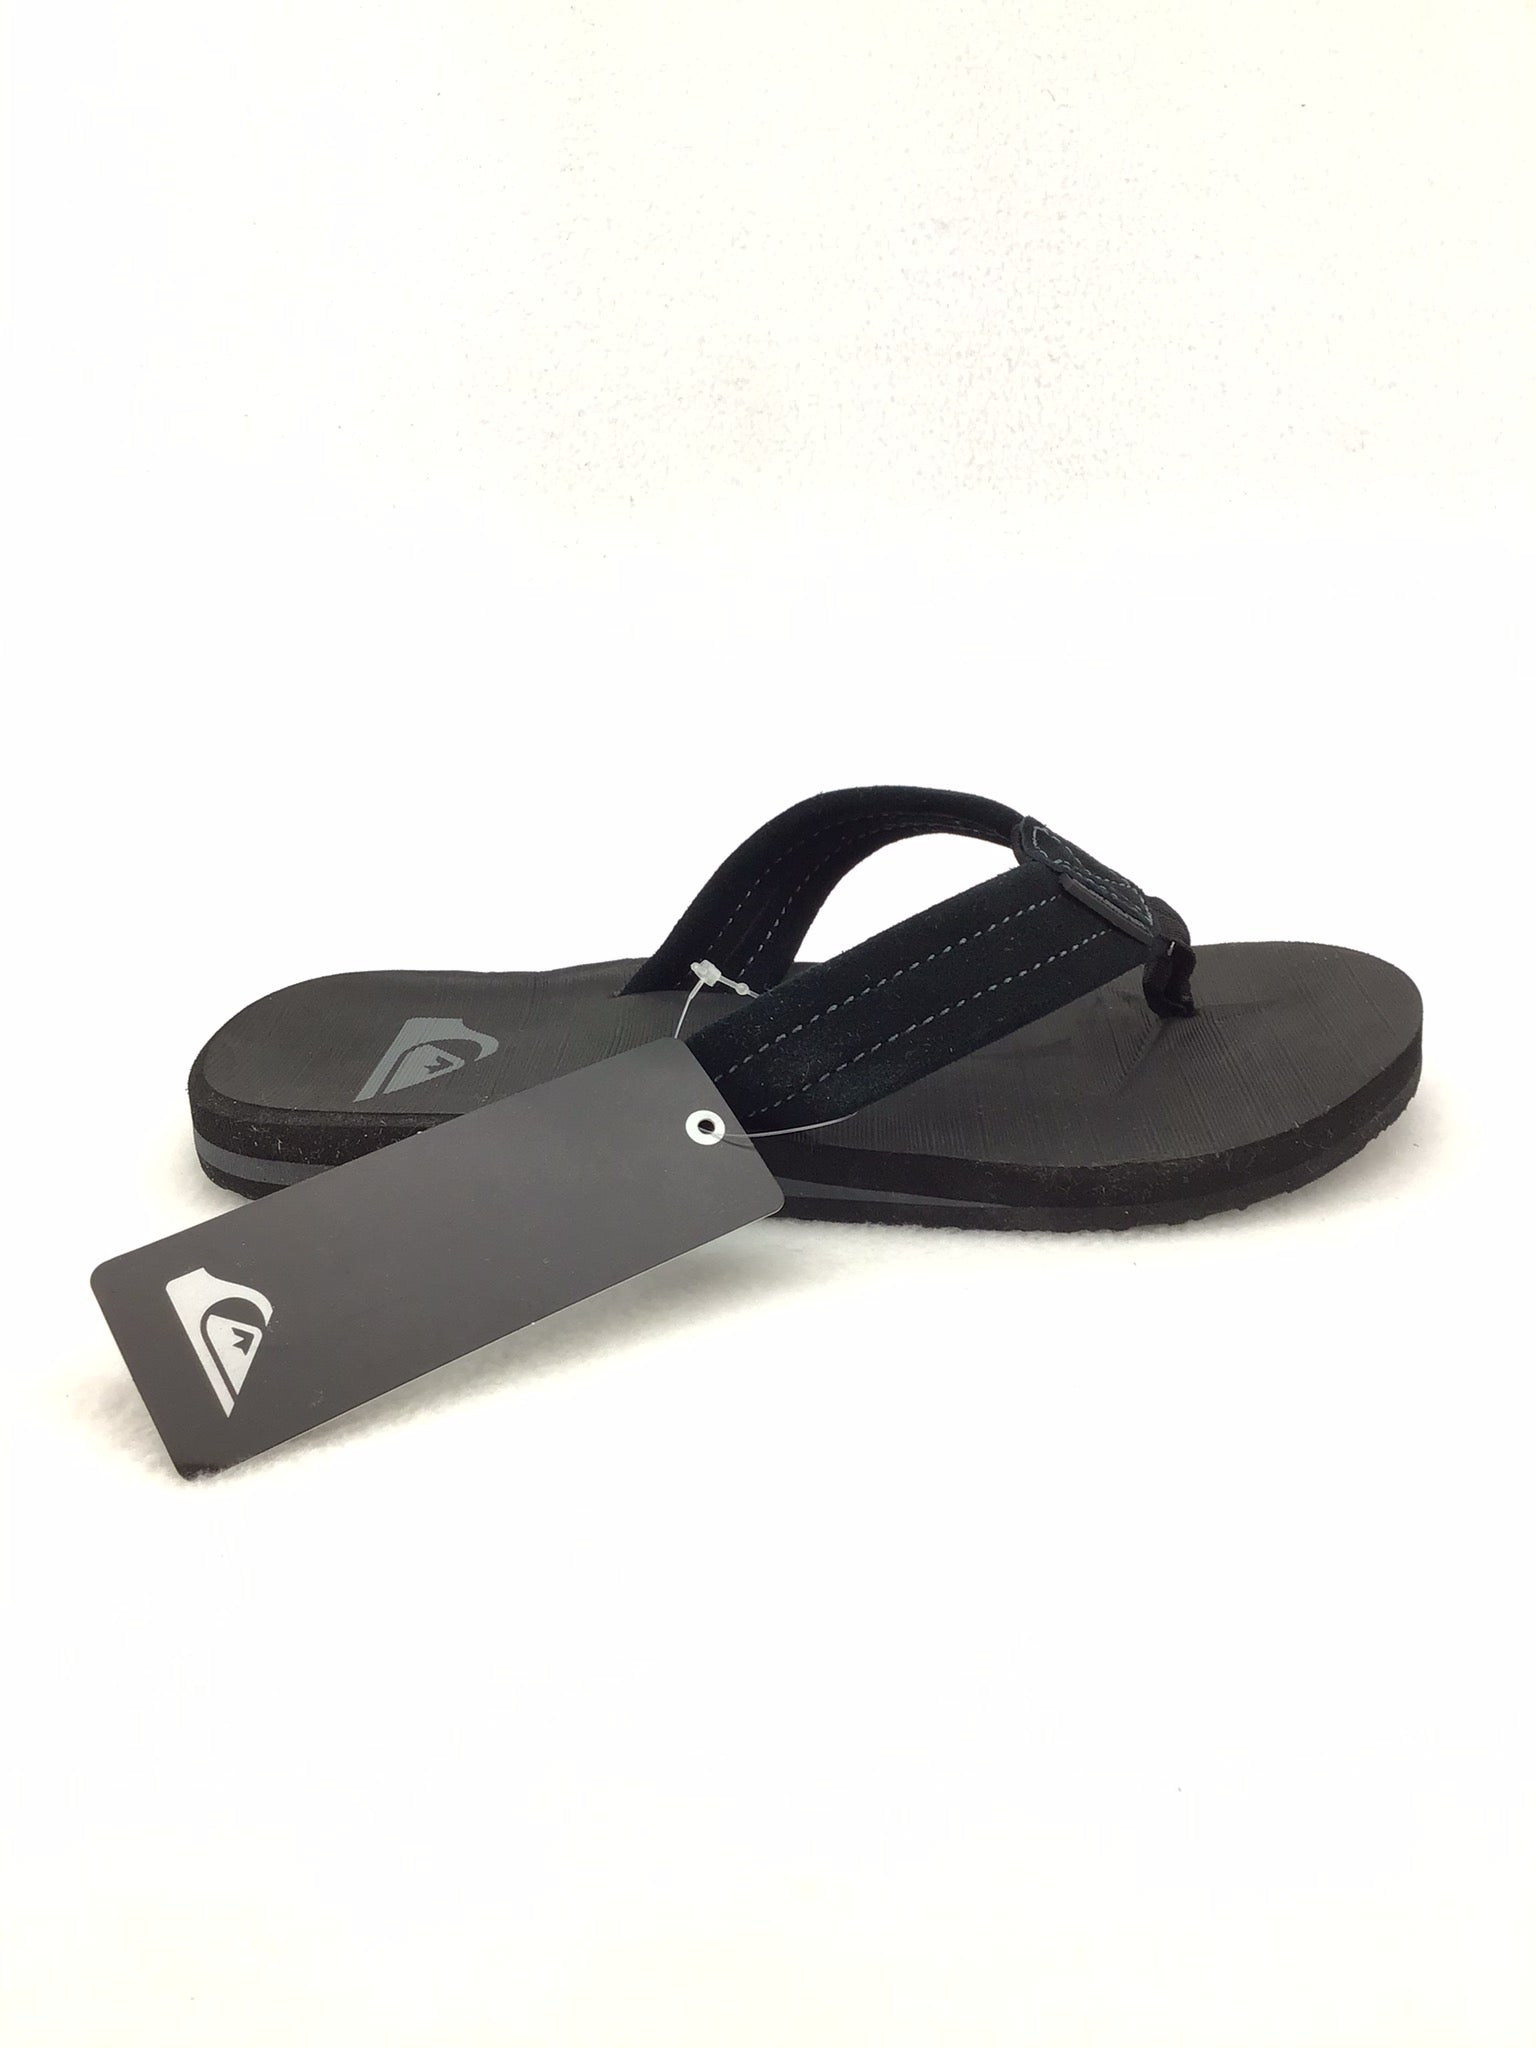 Quicksilver Flip Flop Sandals Size 6